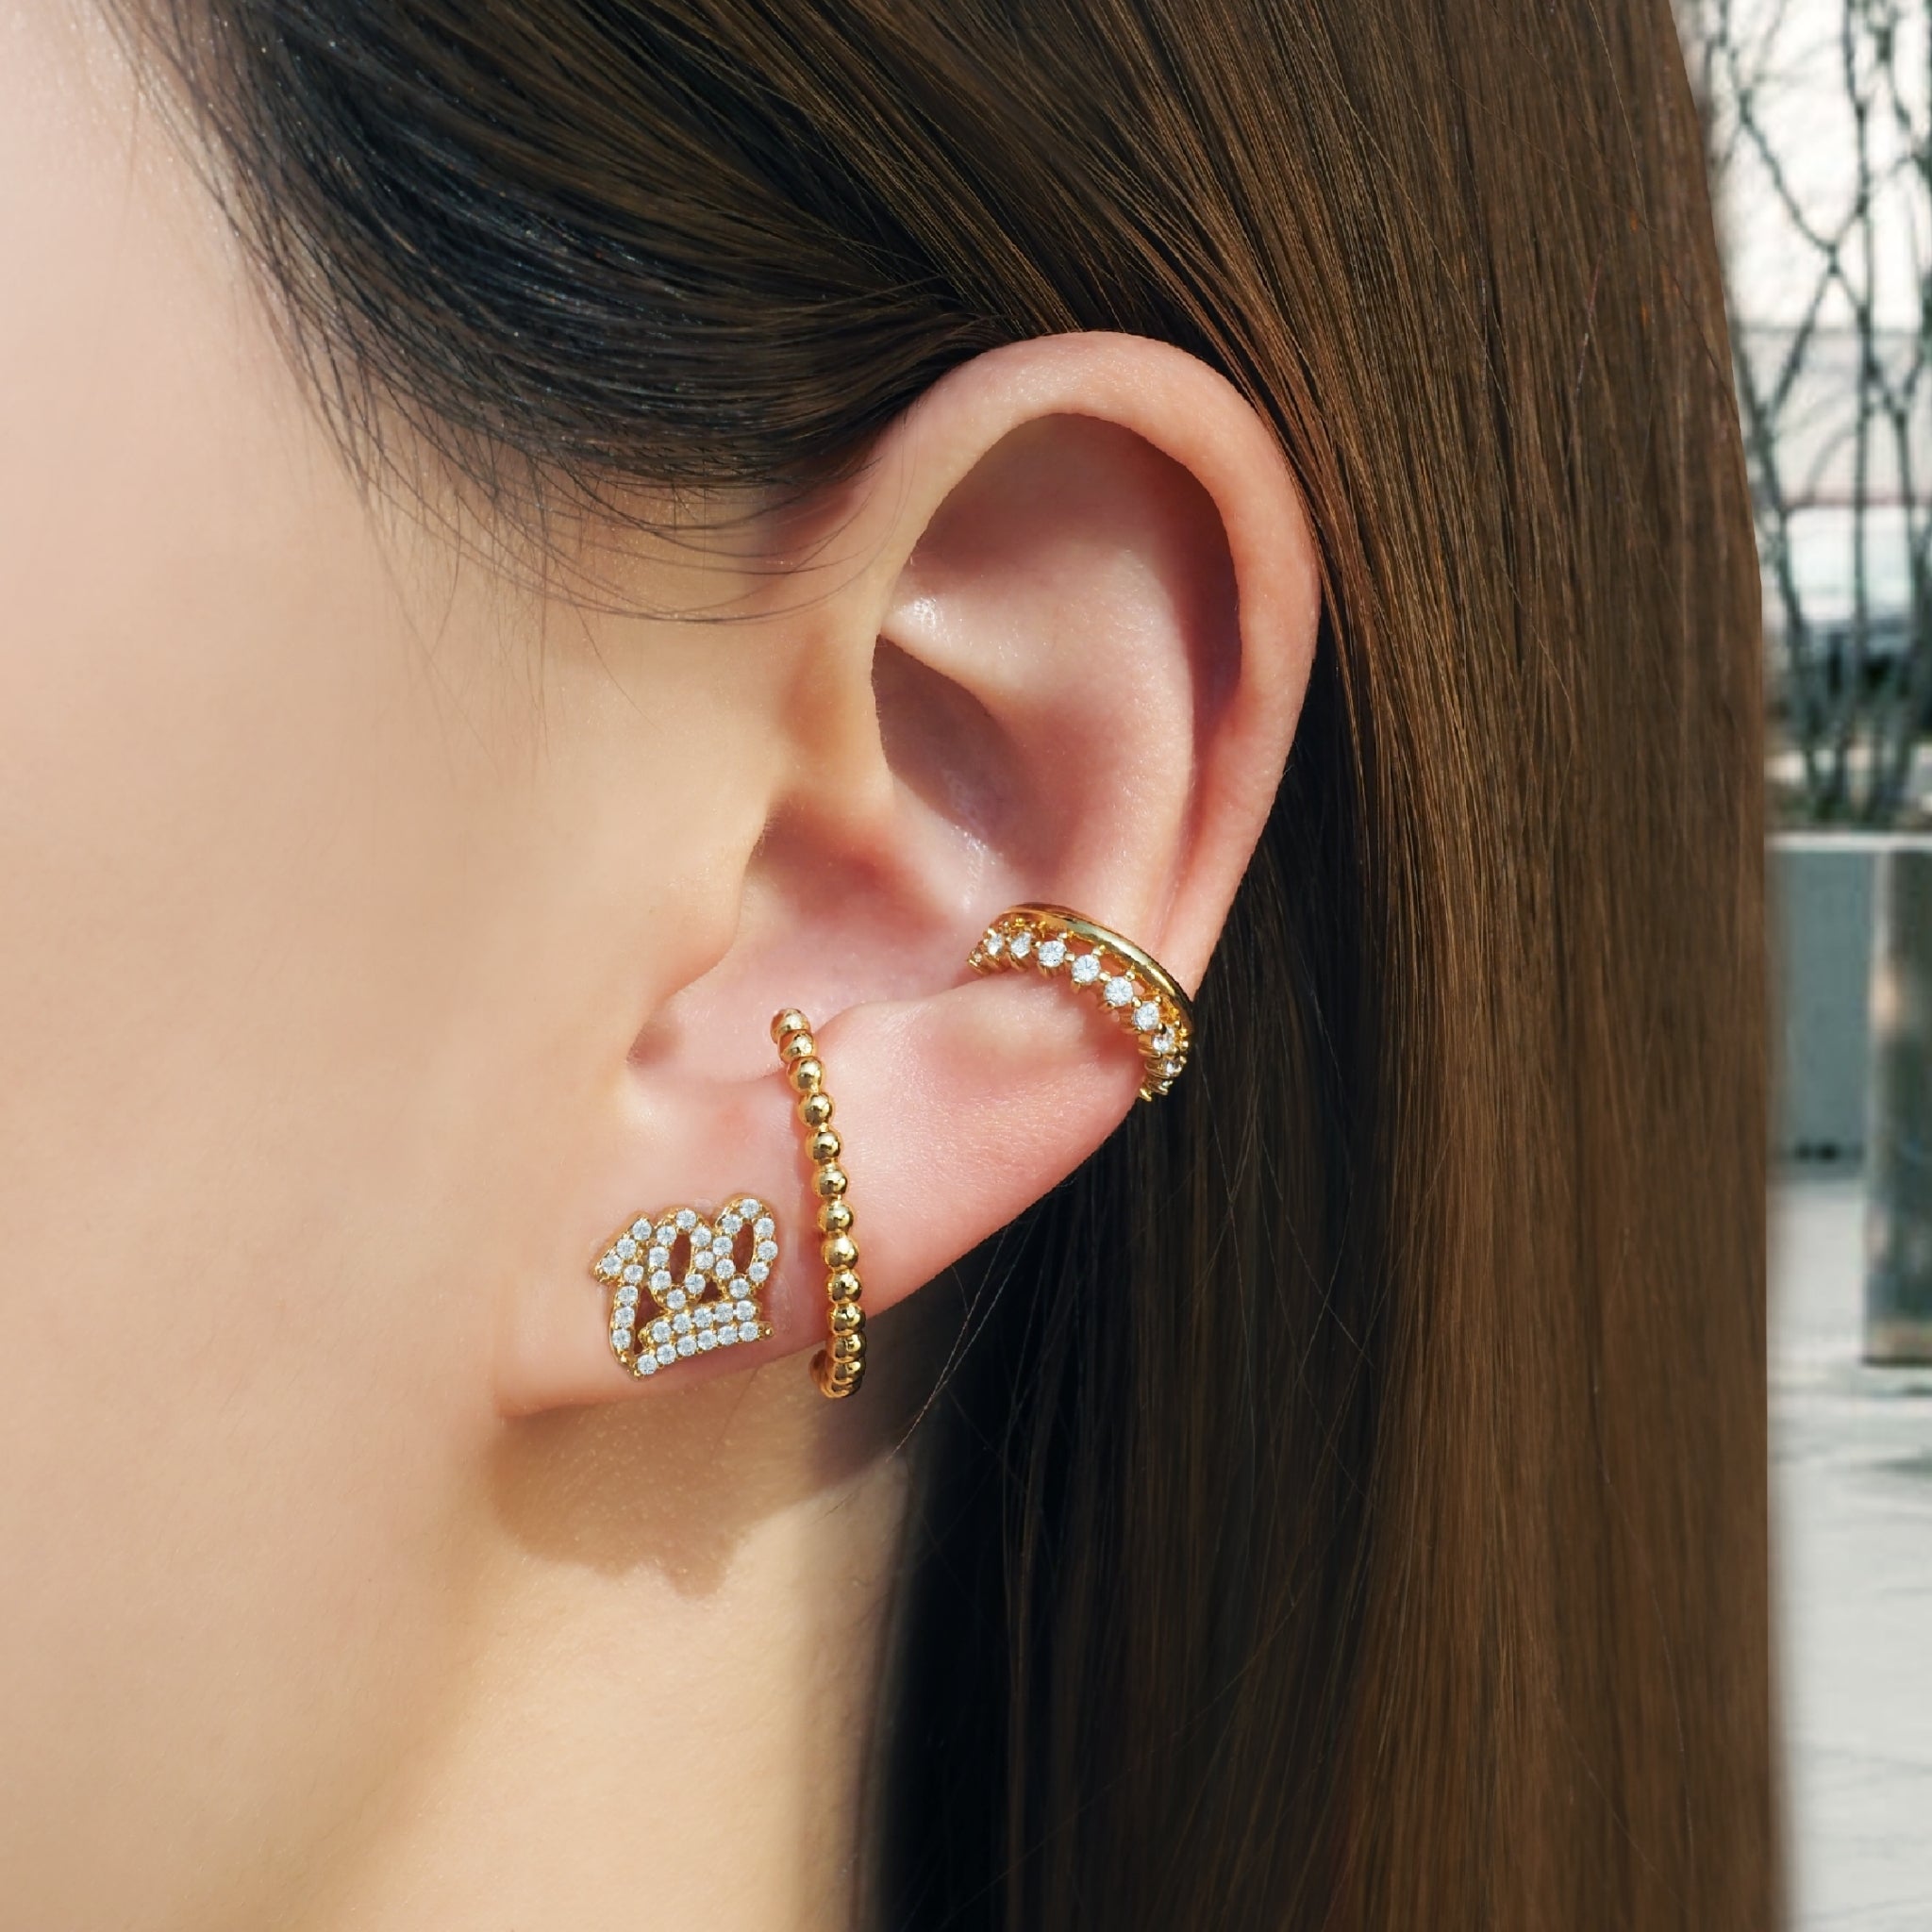 100 Crystal Stud Earrings